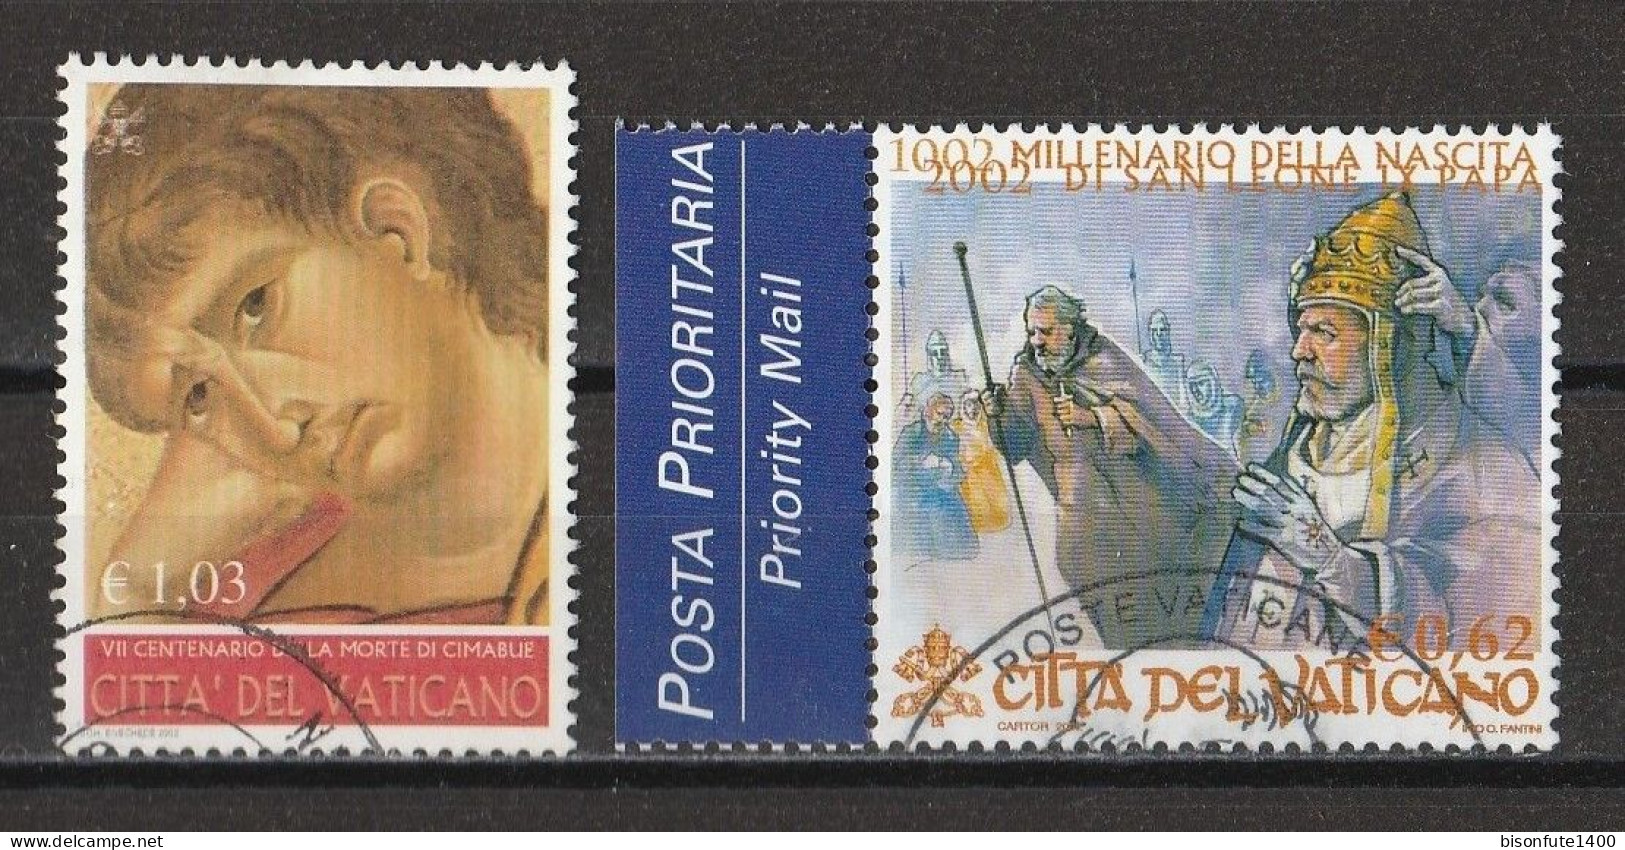 Vatican 2002 : Timbres Yvert & Tellier N° 1266 - 1268 - 1270 - 1275 Et 1277 Oblitérés. - Oblitérés